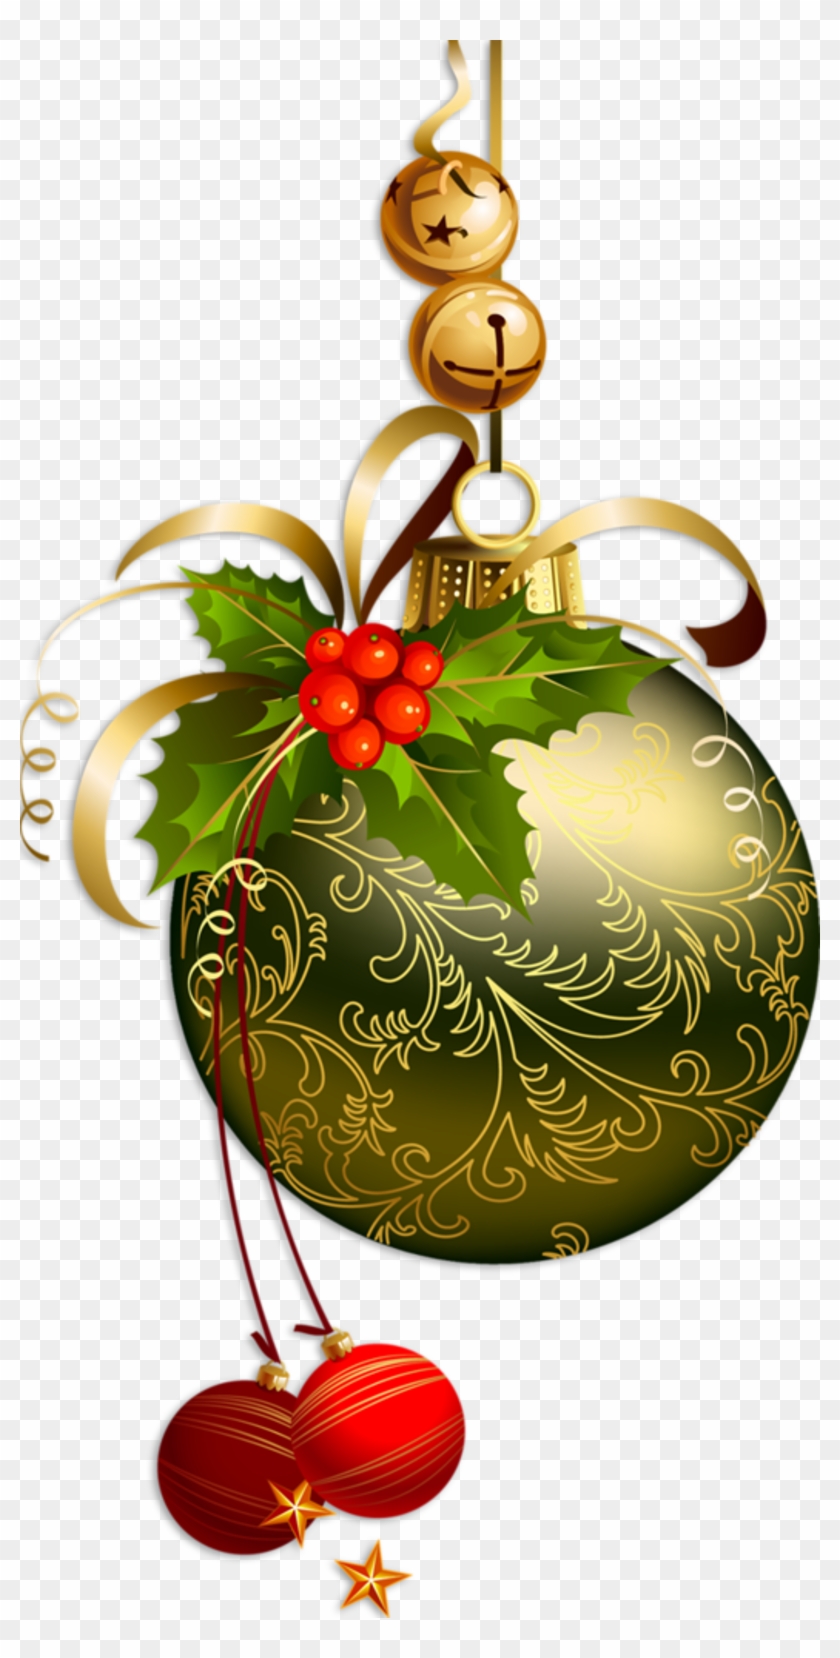 Decos De Noel - Christmas Clipart Transparent Background - Free Transparent  PNG Clipart Images Download